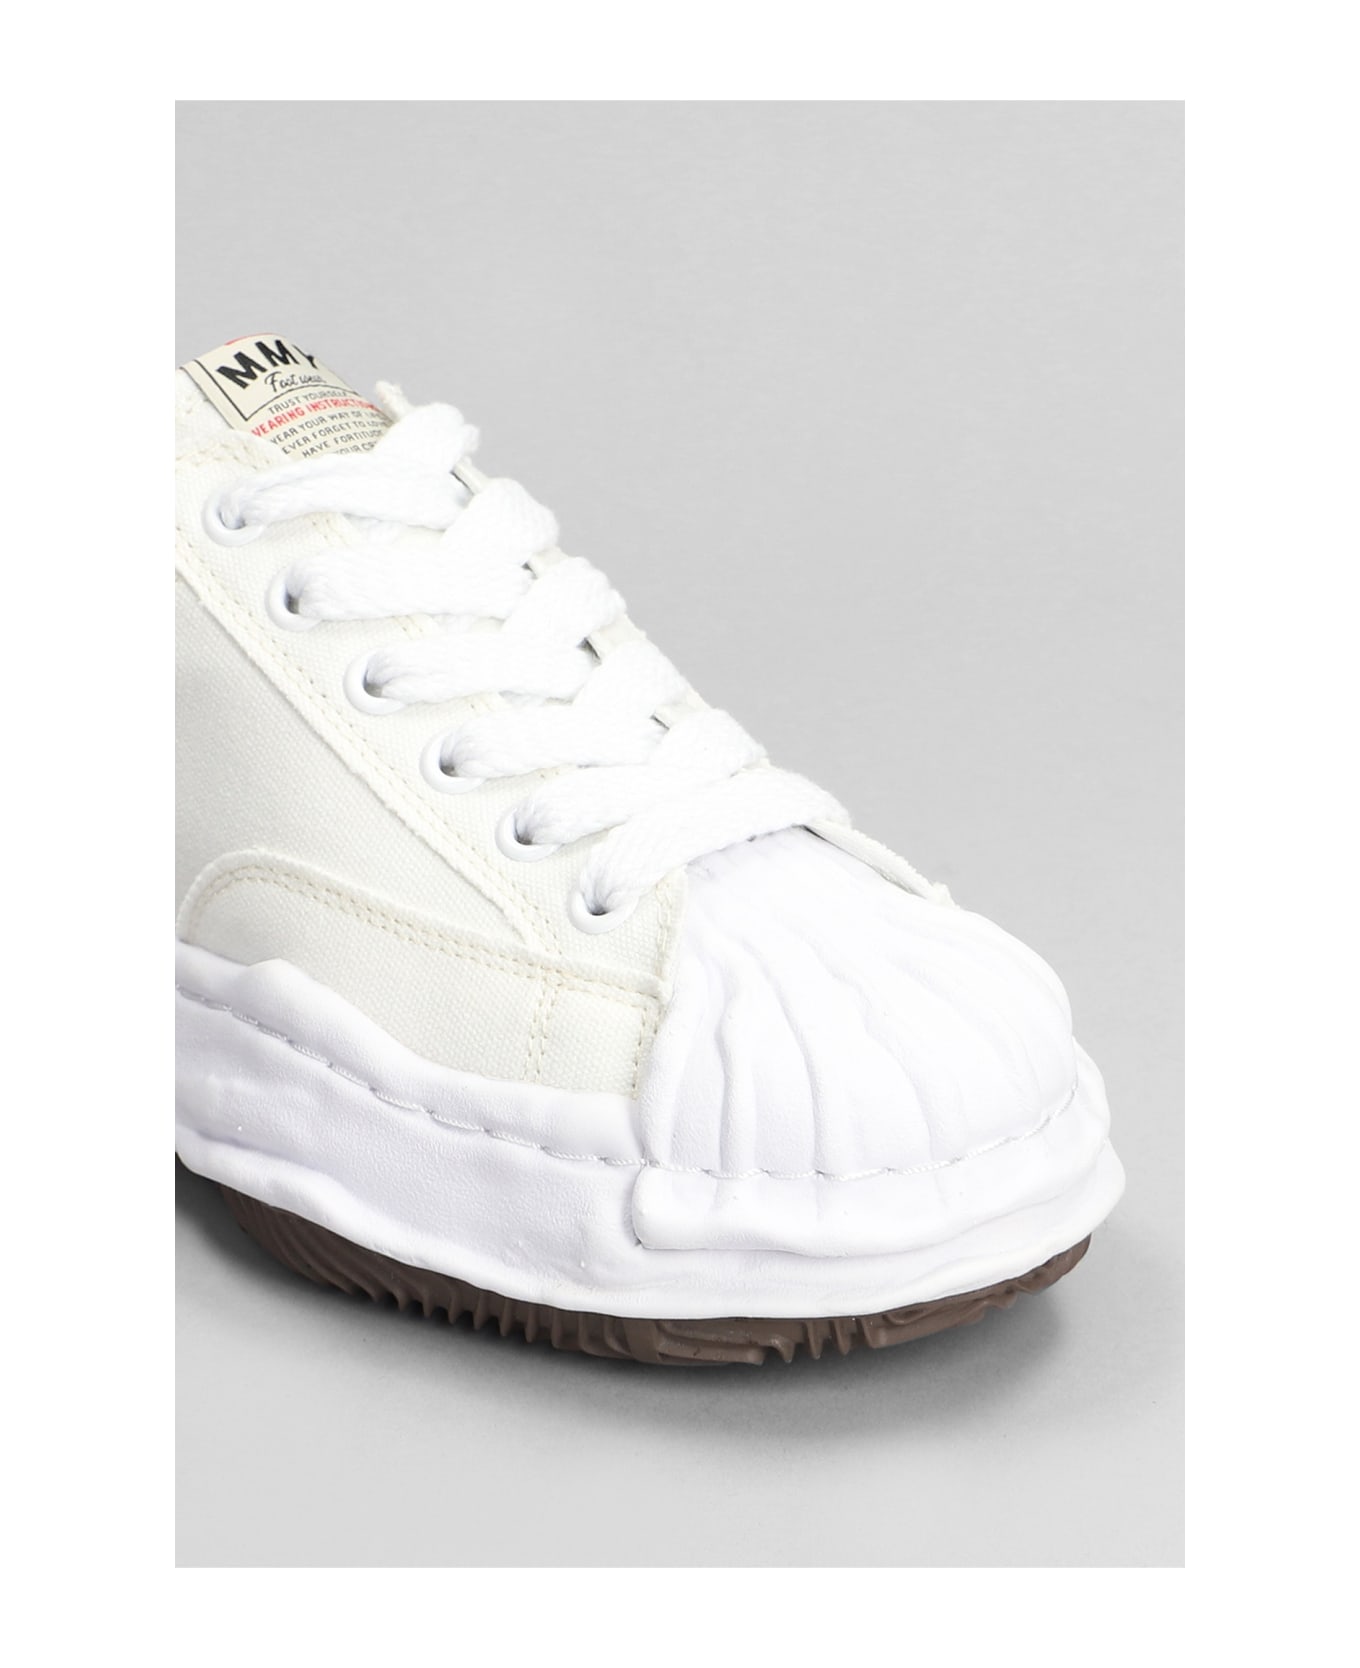 Mihara Yasuhiro Blakey Sneakers In White Canvas - white スニーカー